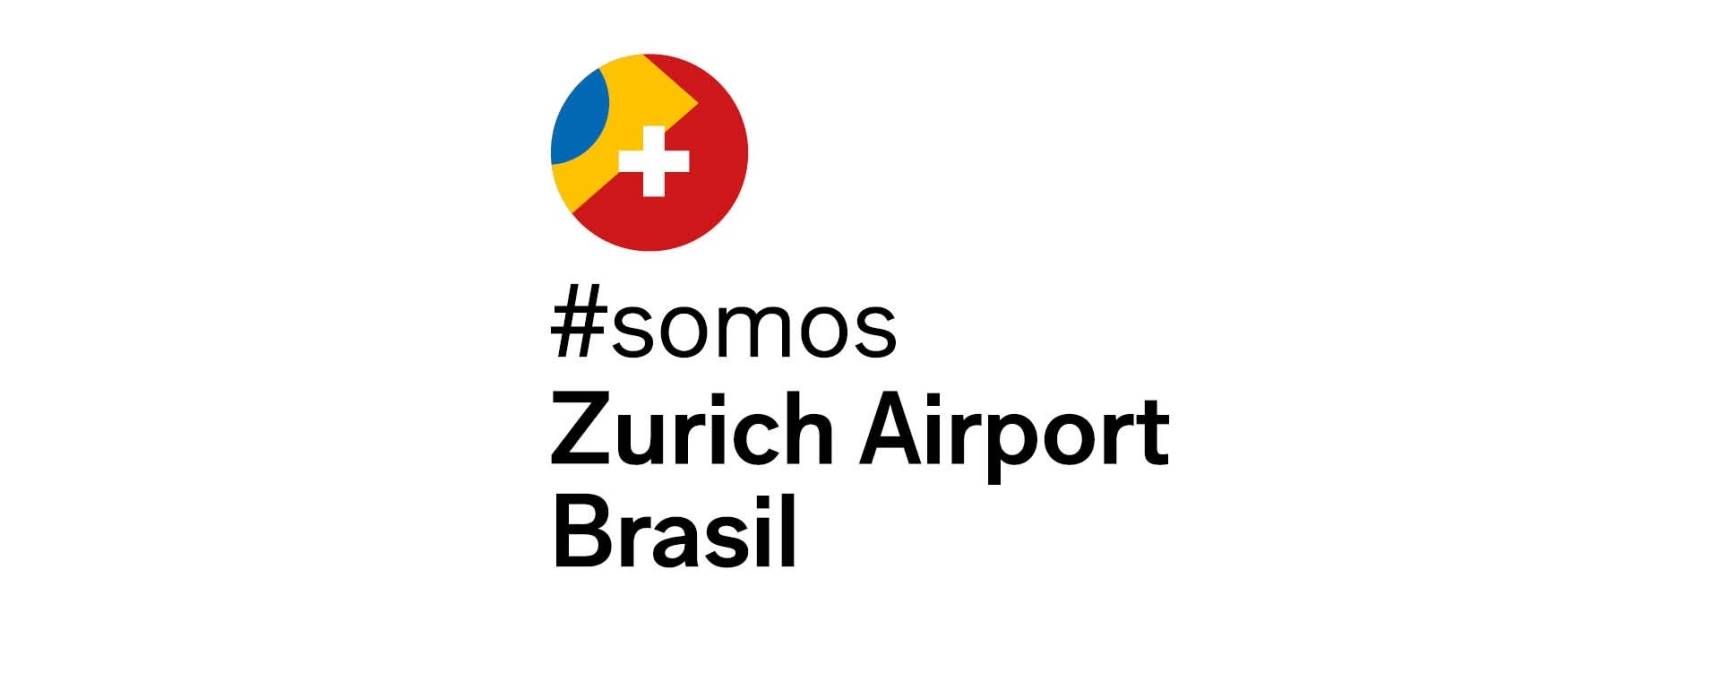 ADN suizo: gestor de los aeropuertos de Florianópolis, Vitória y Macaé pasa a llamarse Zurich Airport Brasil